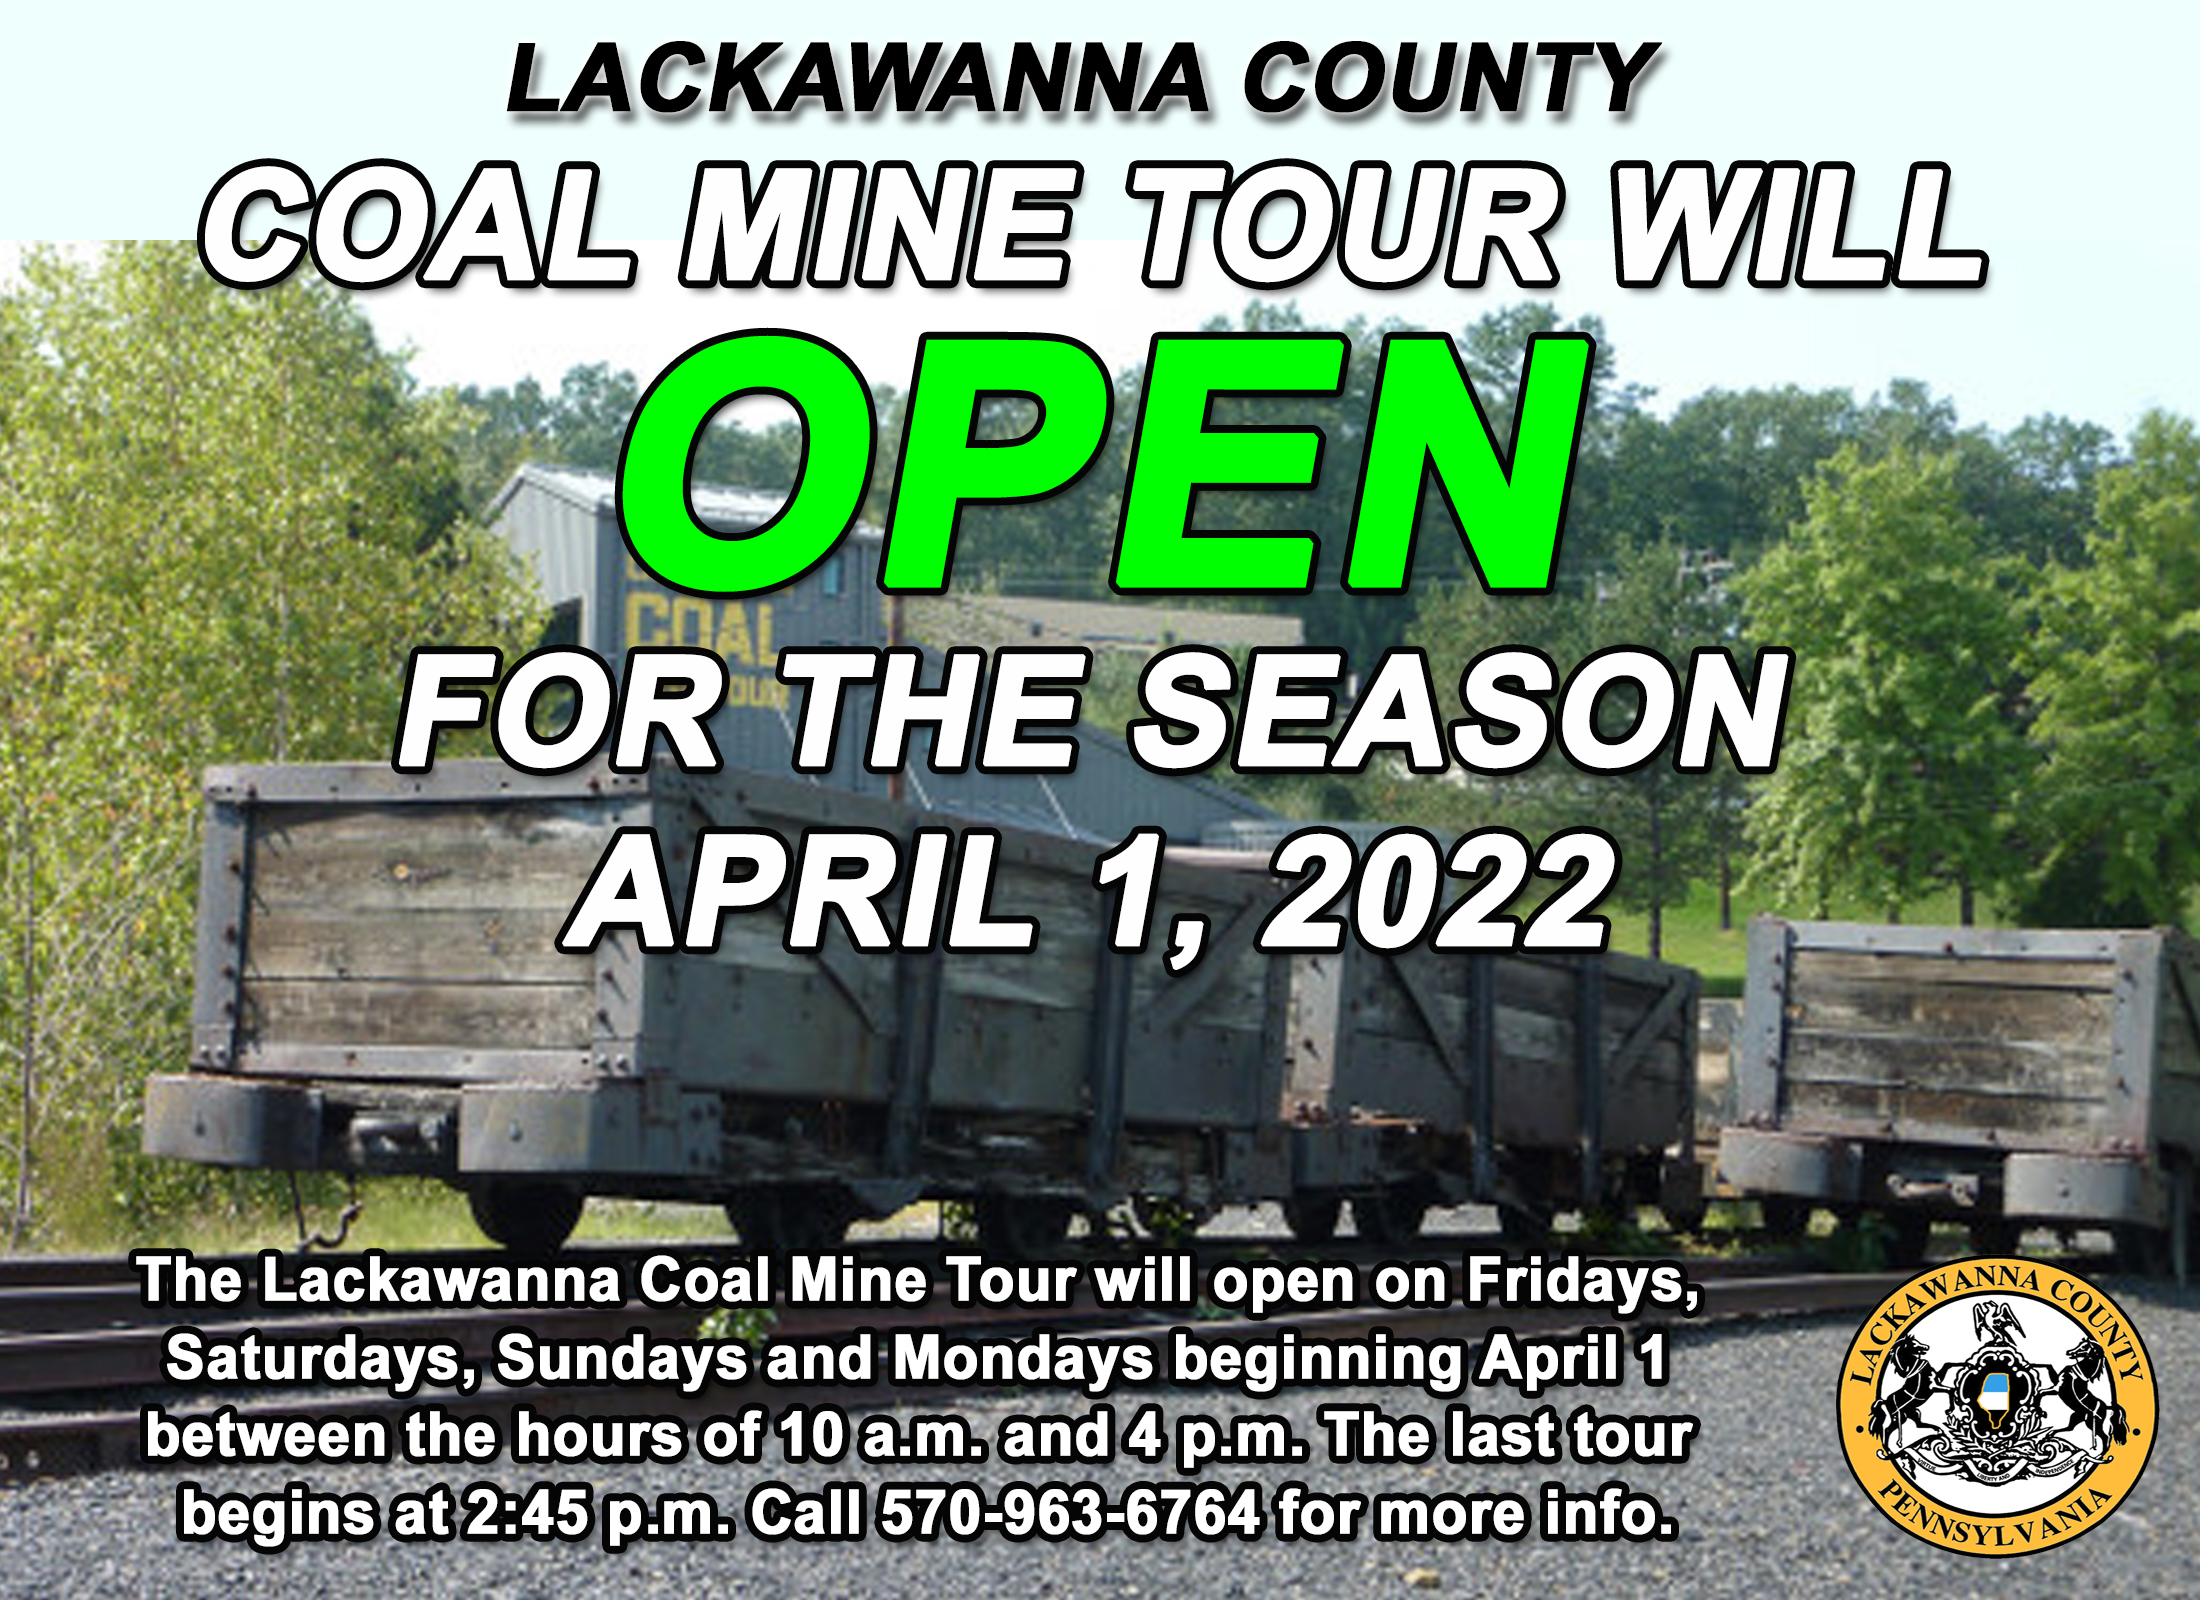 https://ww2.lackawannacounty.org/wp-content/uploads/2022/03/Coal-Mine-Open-2022-copy.jpg